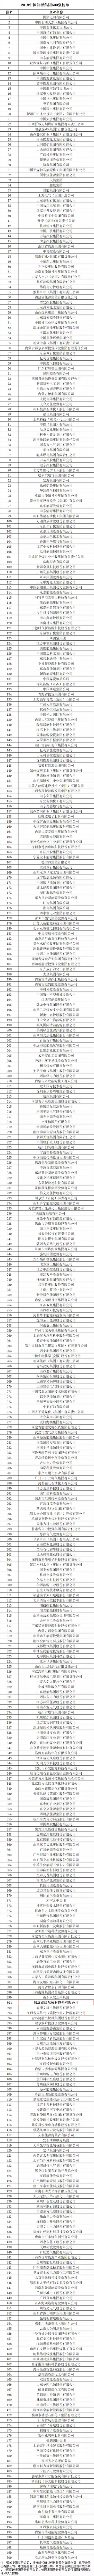 十大现金买球入口荣登2018中国能源集团500强榜单3.jpg